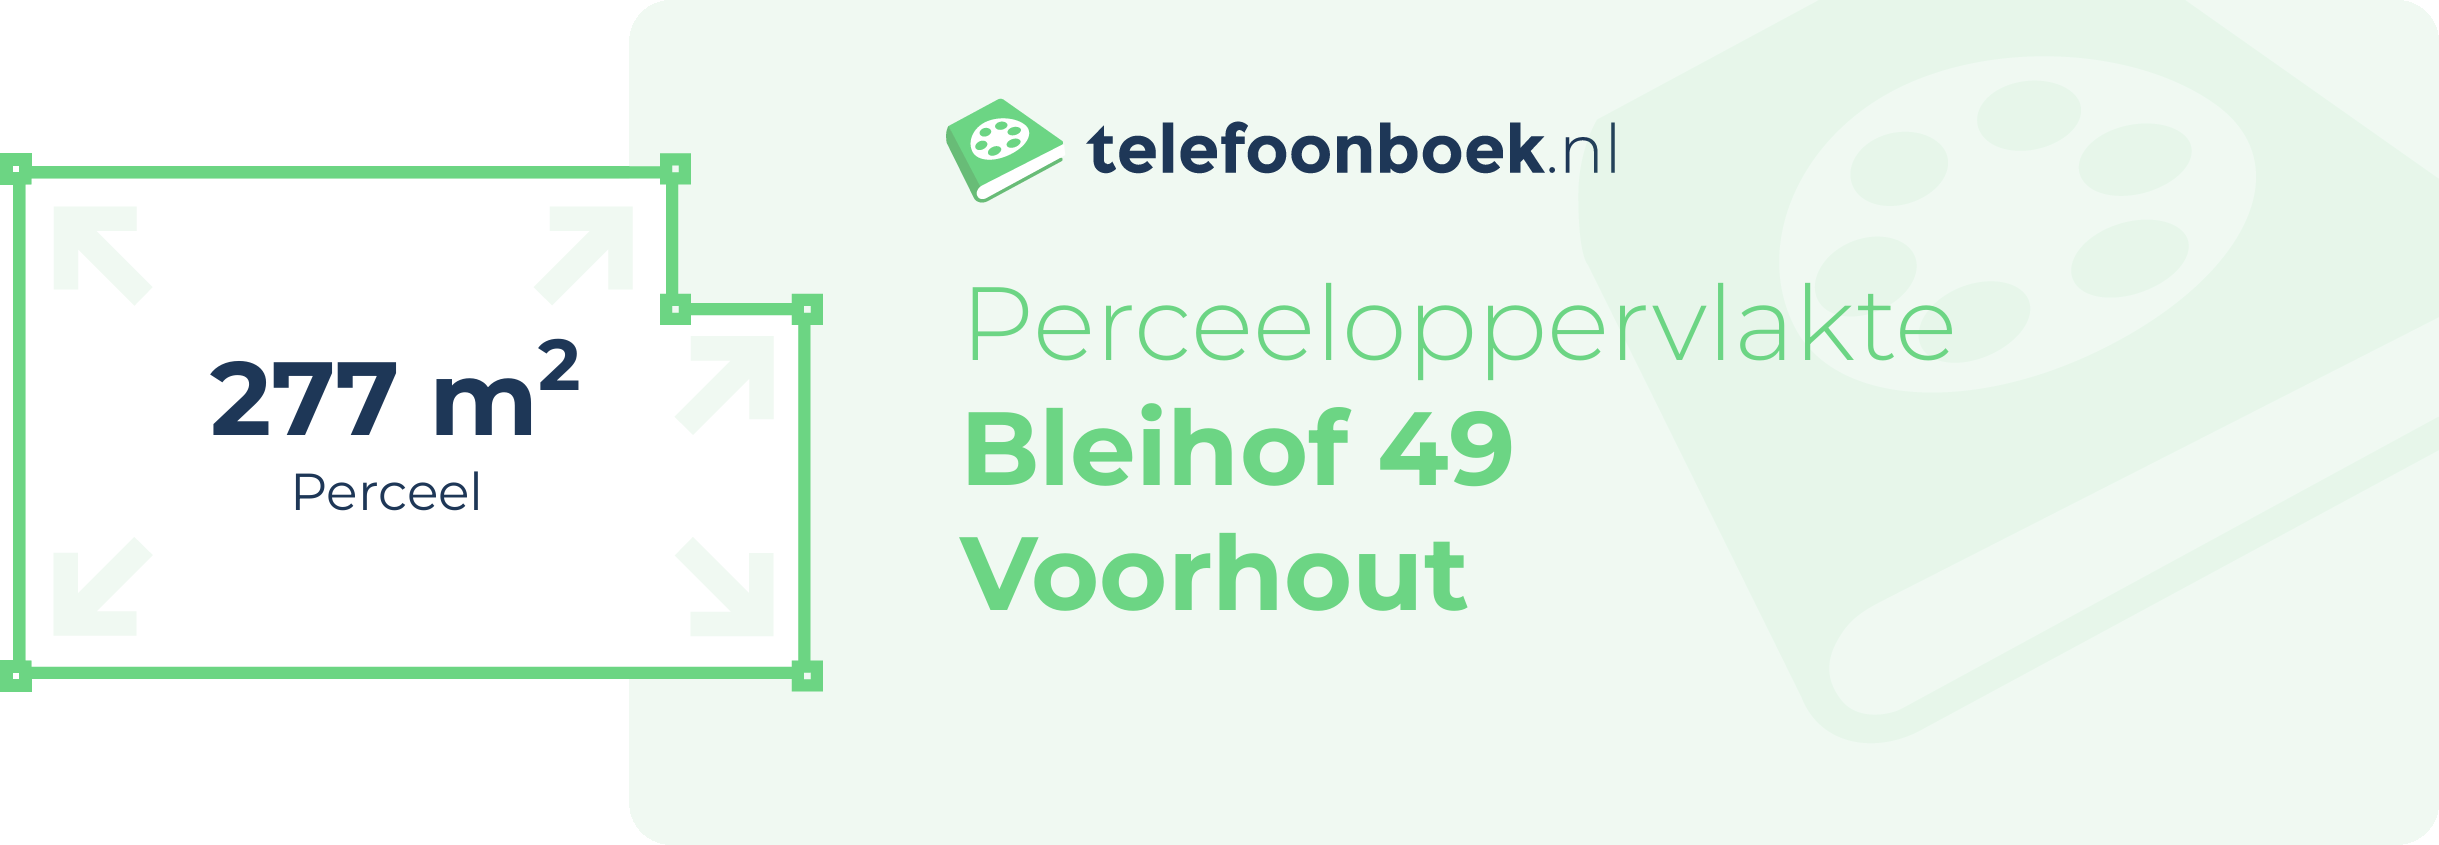 Perceeloppervlakte Bleihof 49 Voorhout